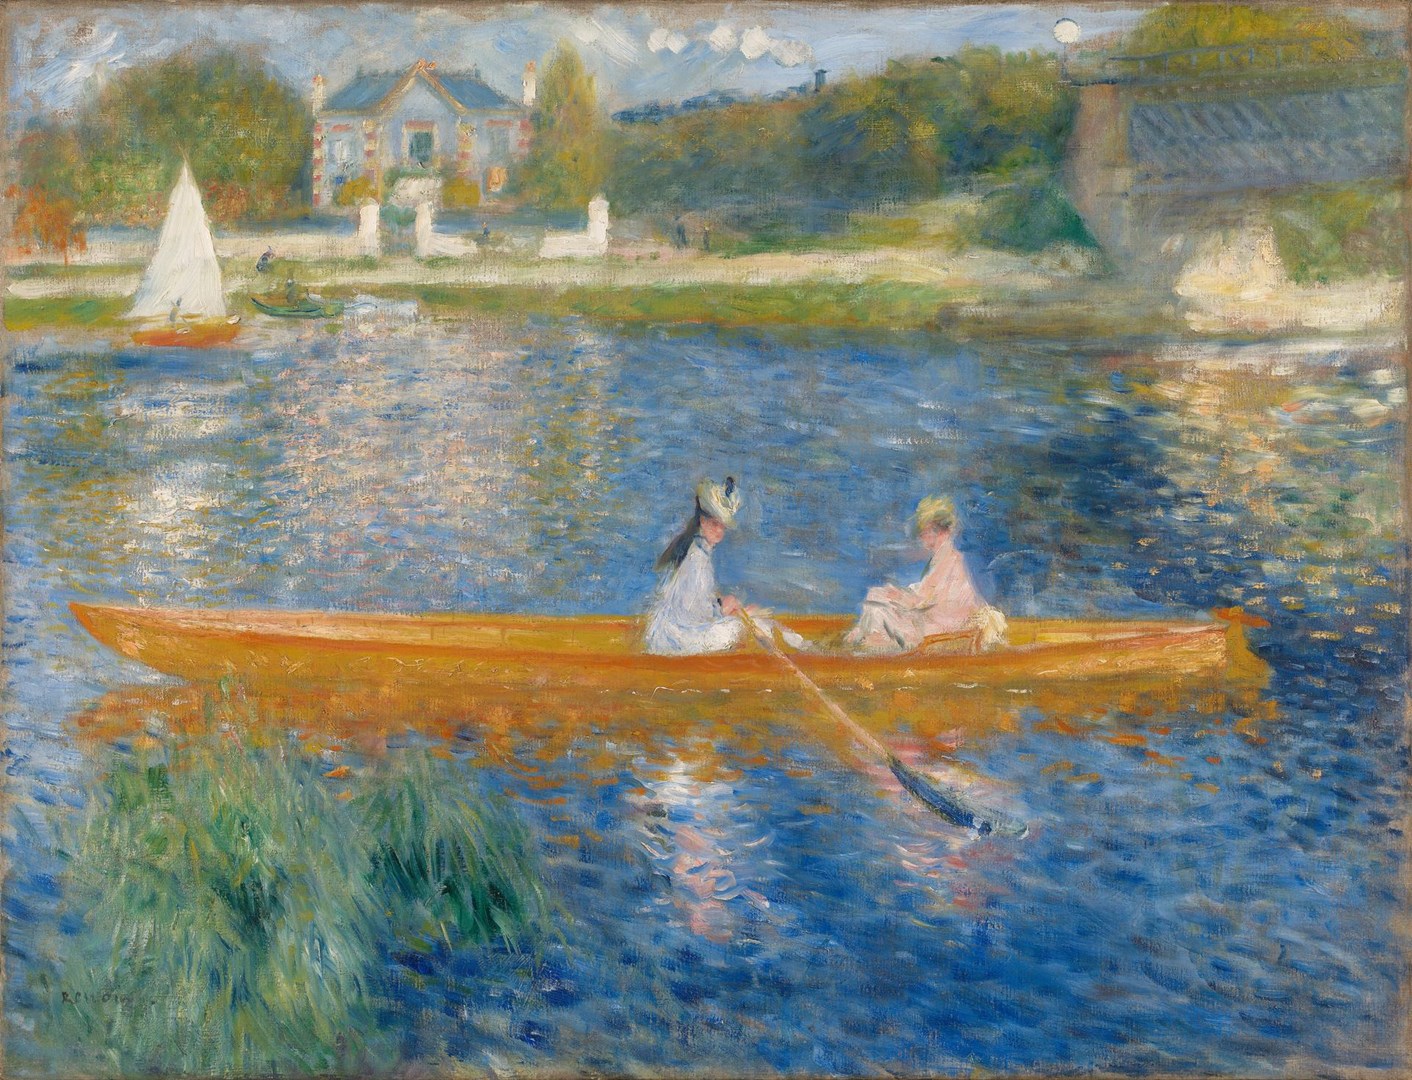 Skif (La Yole) by Pierre-Auguste Renoir - 1875 - 71 x 92 cm 